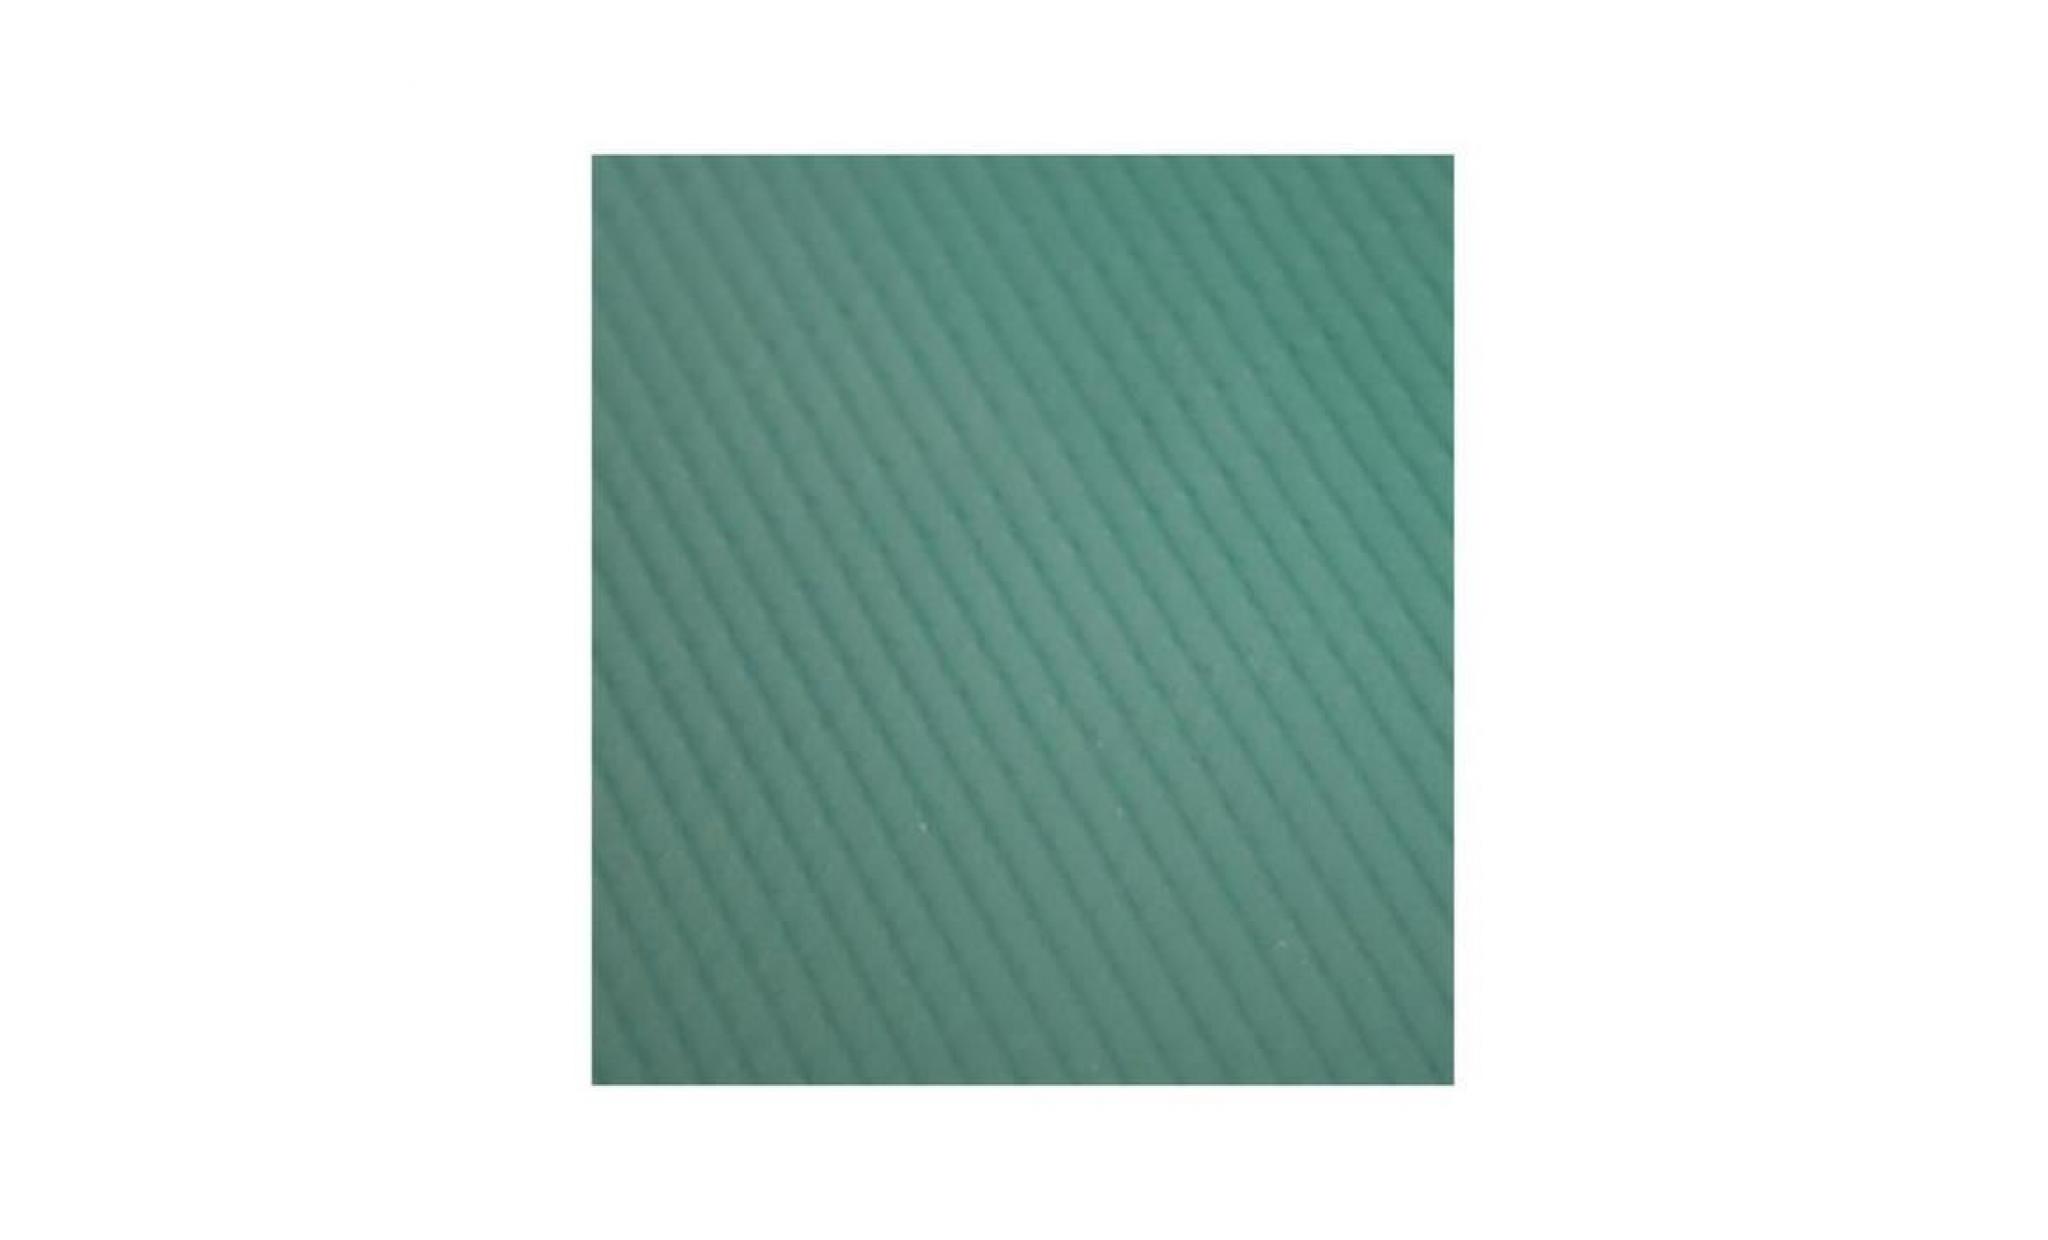 merlin mlnpatsgr 21,59 cm x 27,94 cm sécurité solide couverture patch   vert